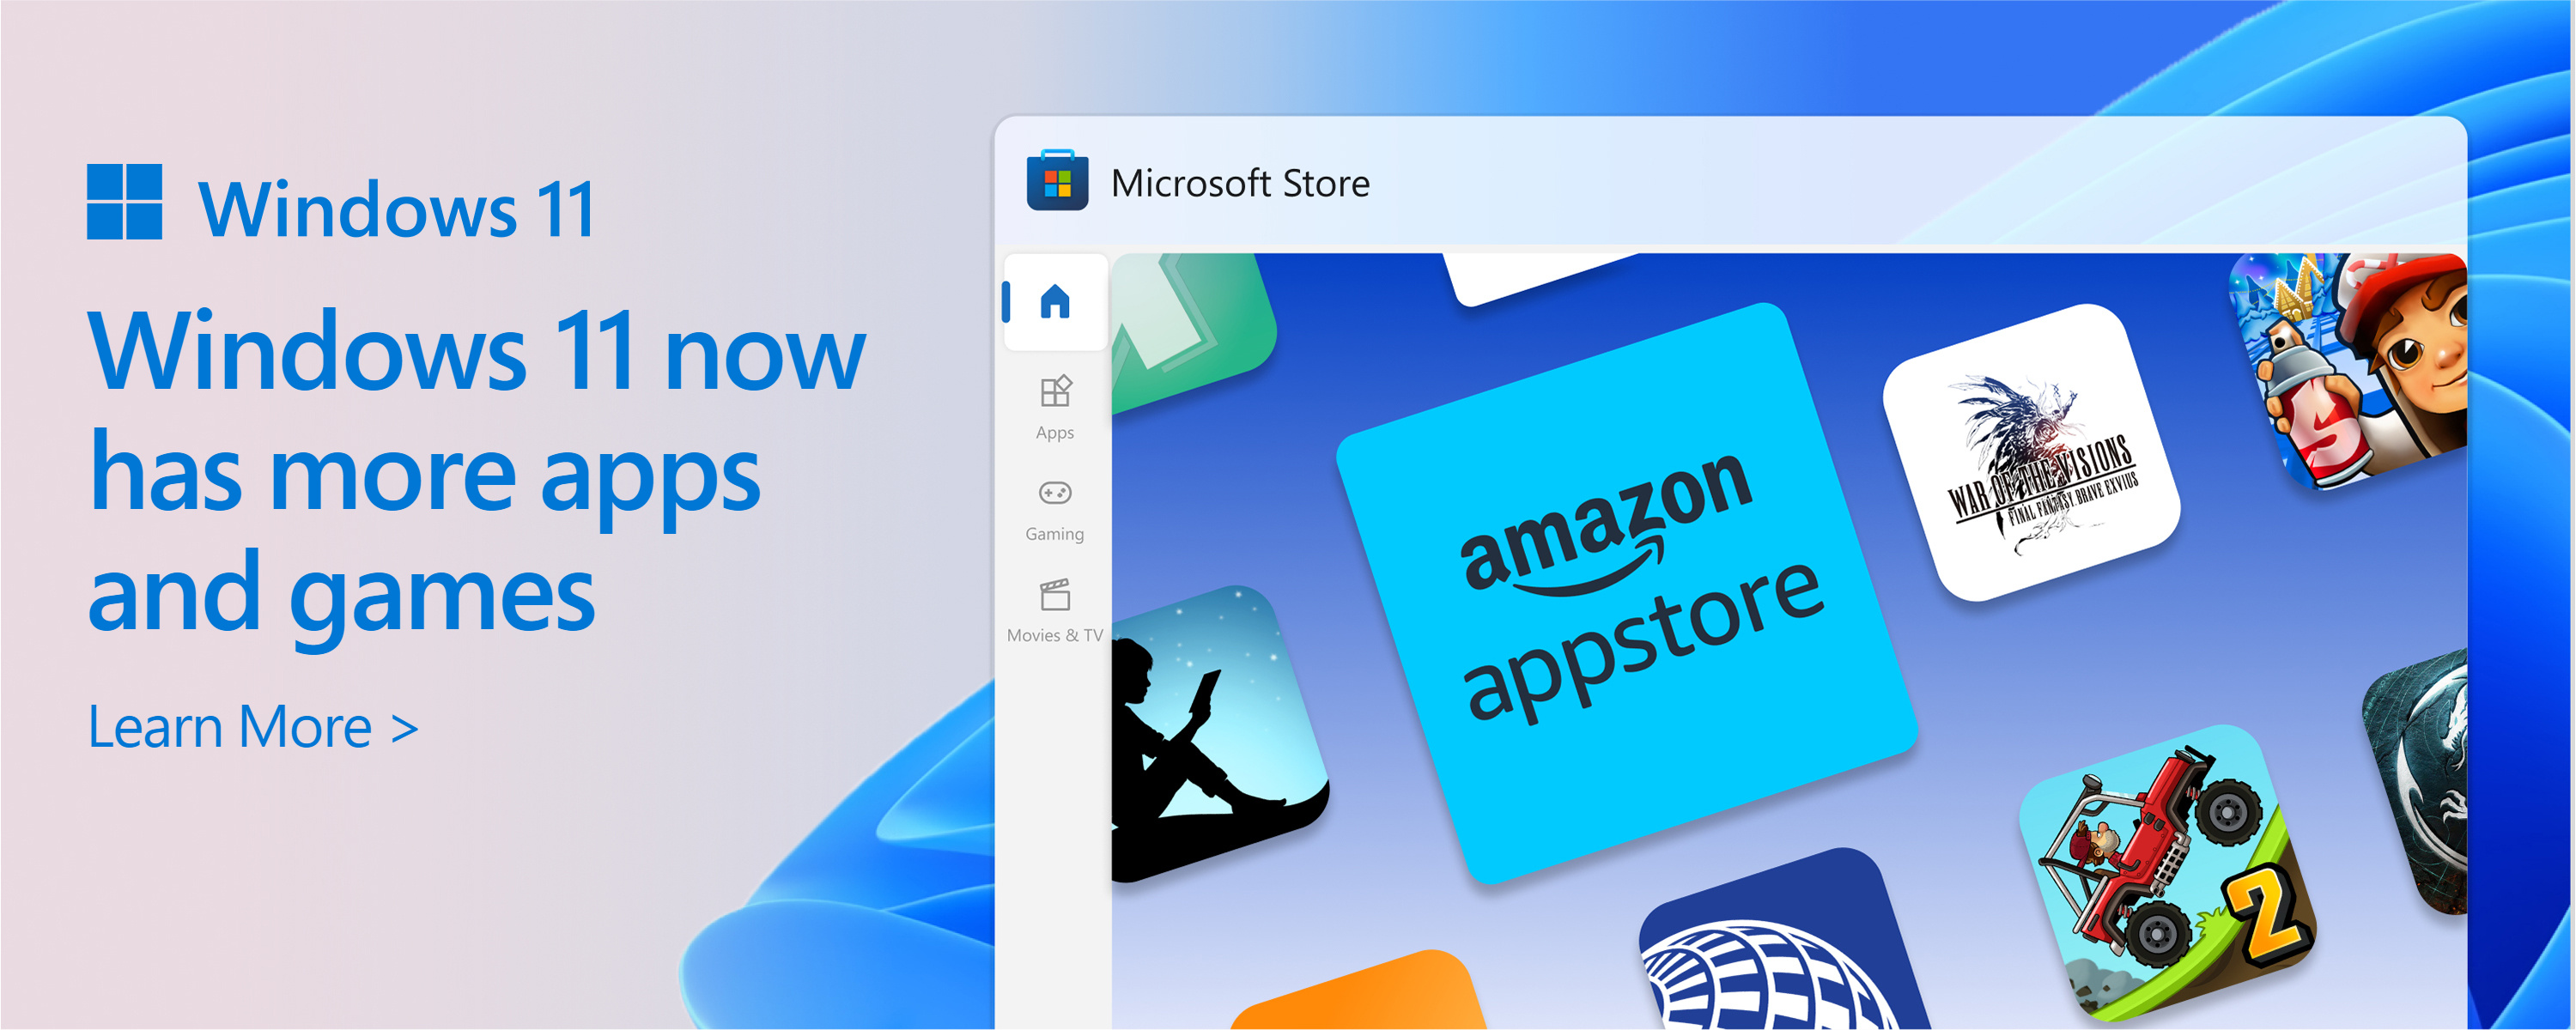 Microsoft Store のテキストを含む Microsoft Store のスクリーンショット:Microsoft Store のカタログが増えています。 Windows 11は、必要なアプリやゲームの多くを提供します。